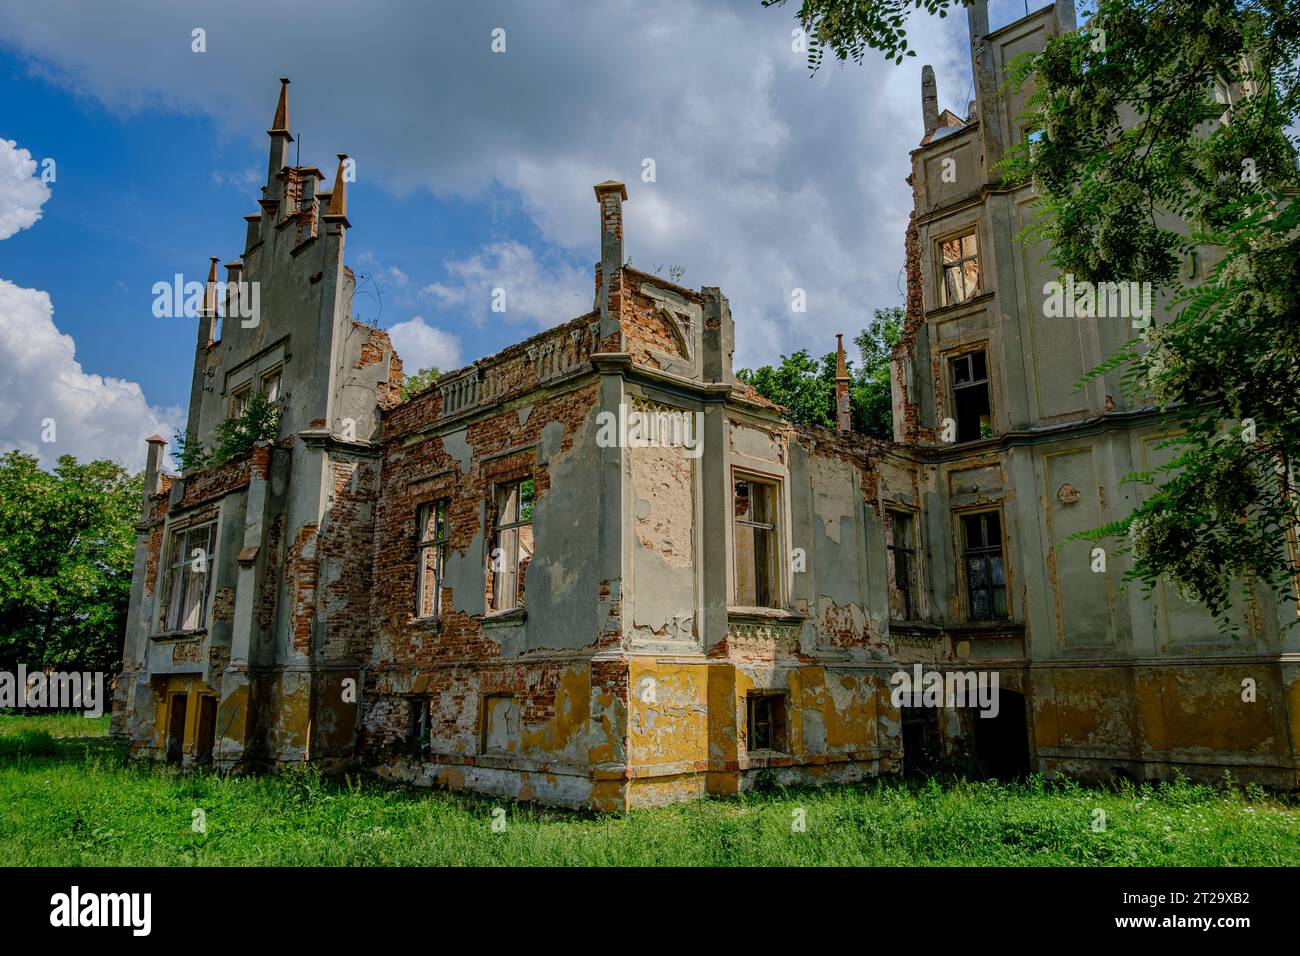 Die Ruine des Herrenhauses Rosen, ein neogotisches Gebäude aus der zweiten Hälfte des 19. Jahrhunderts, in Roznow (Rosen), Woiwodschaft Oppeln, Polen. Stockfoto